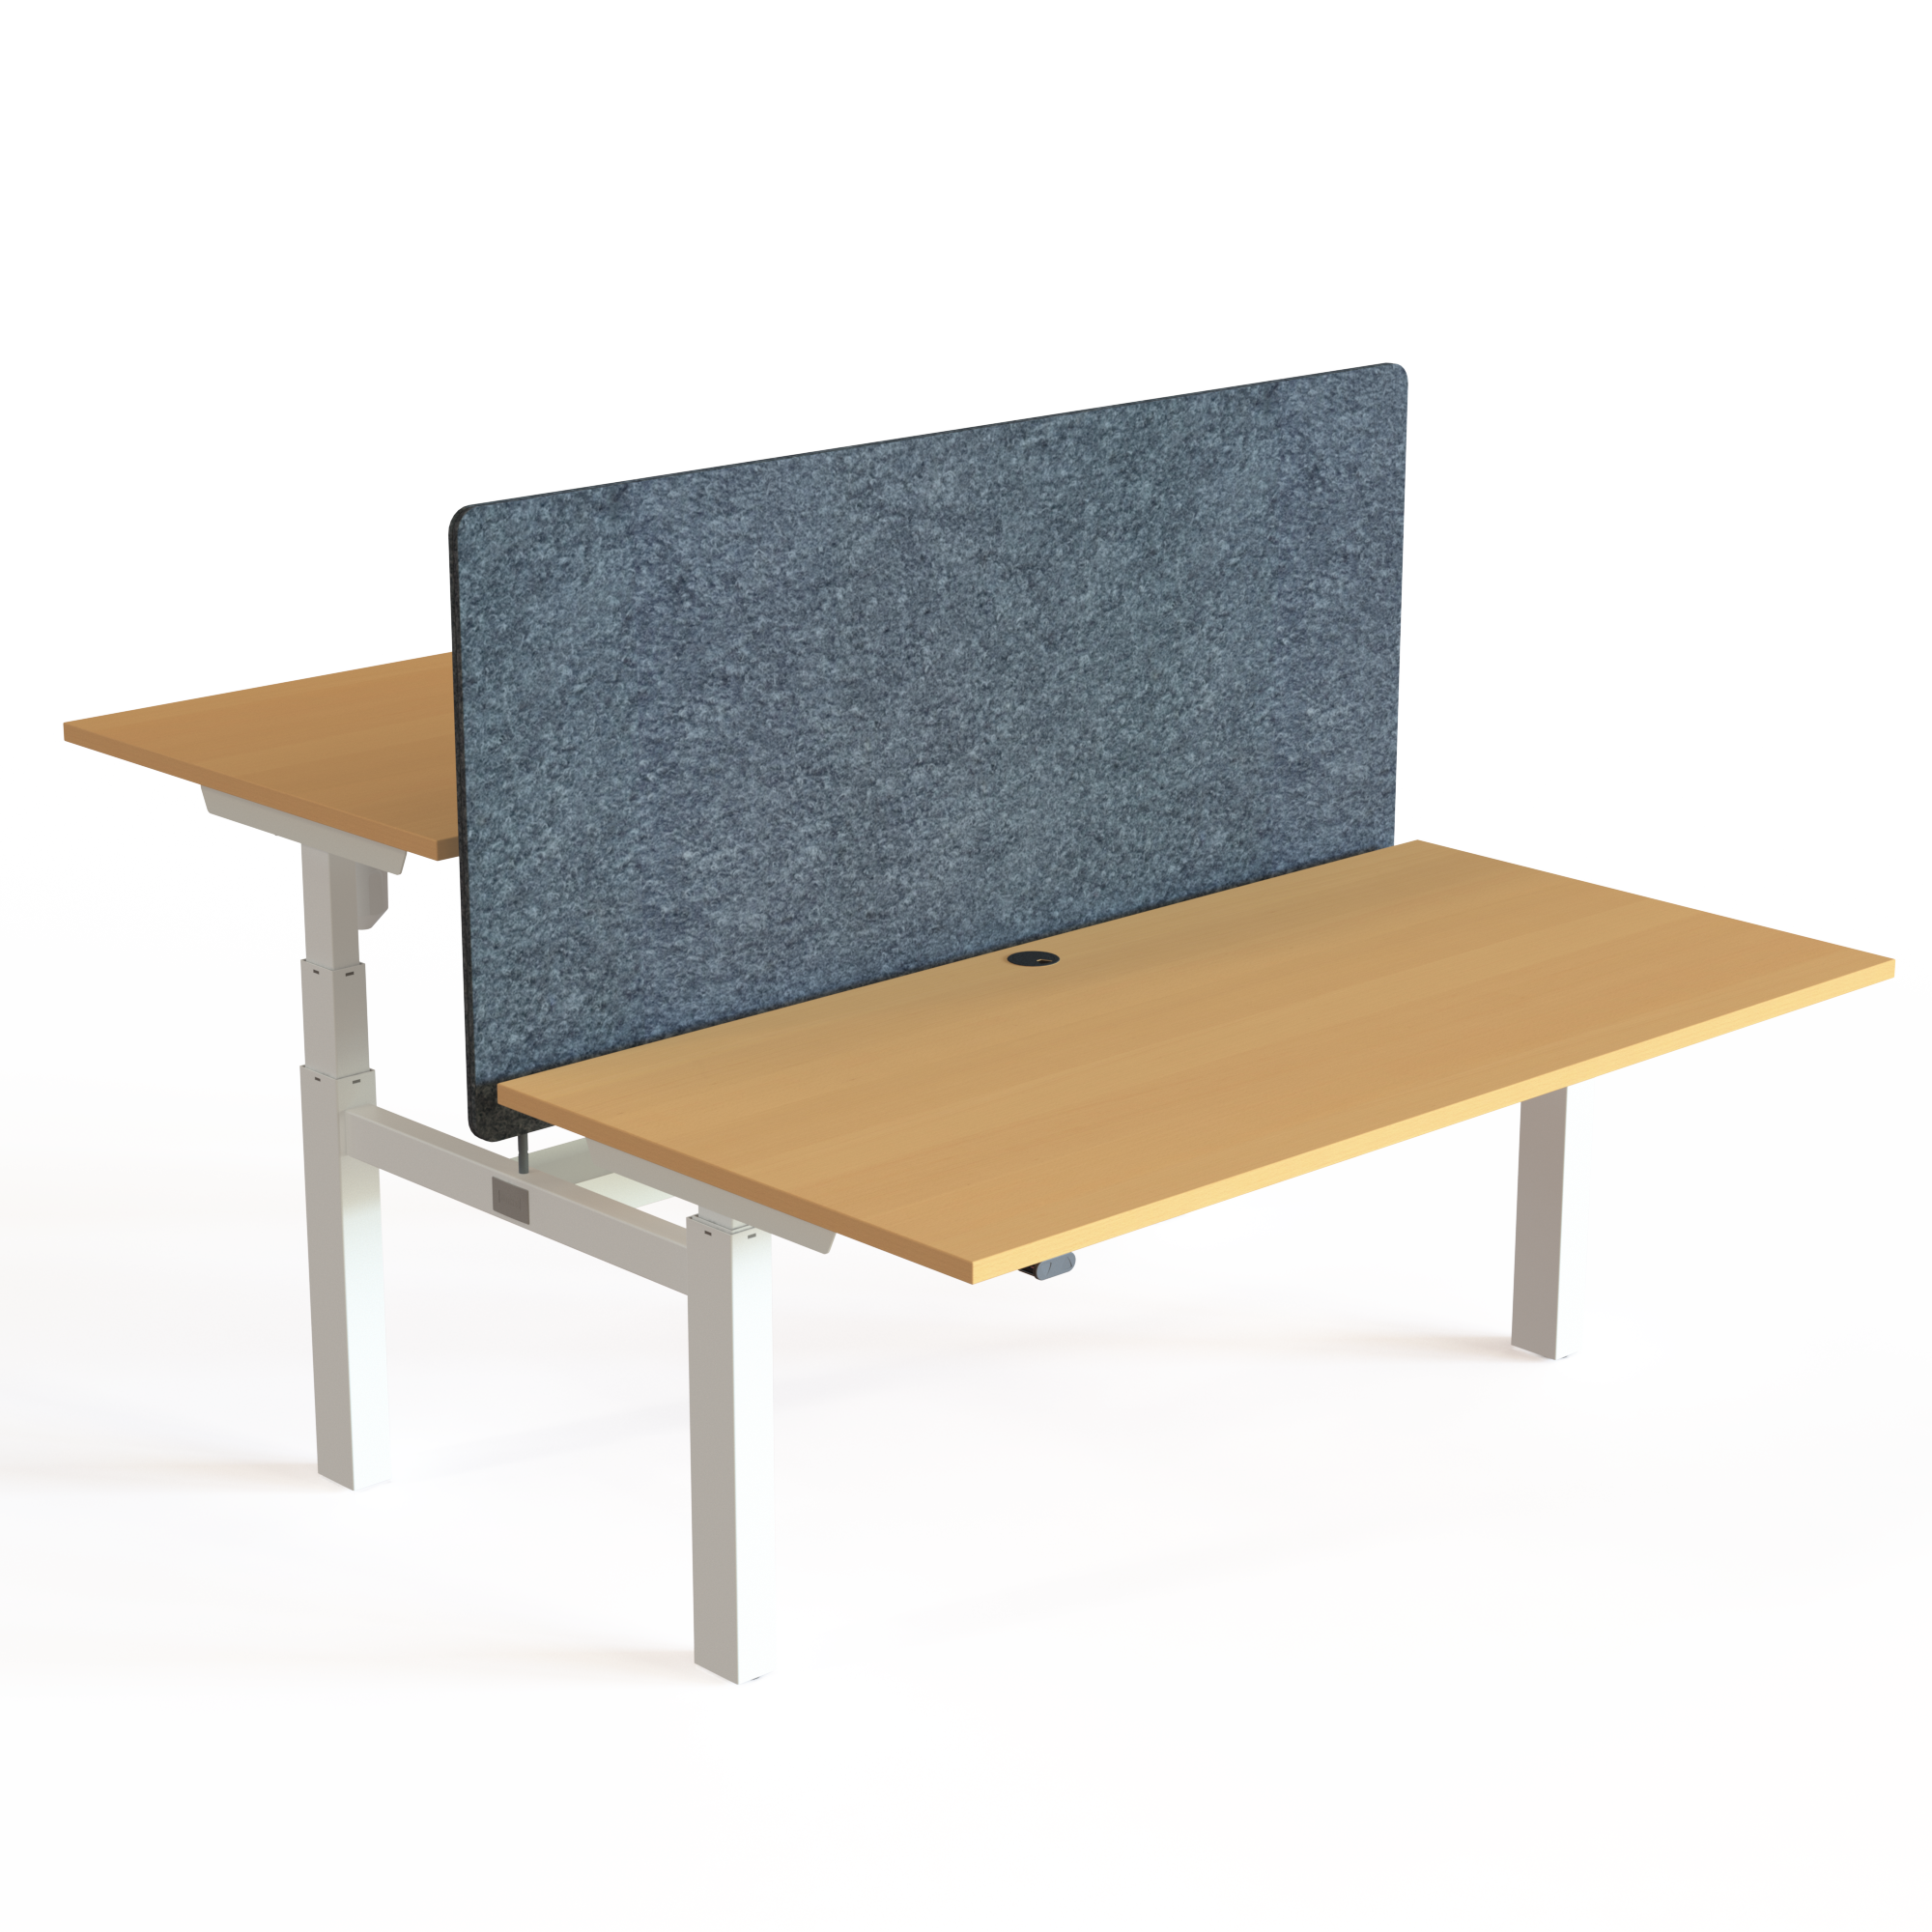 Elektrisch verstelbaar bureau | 160x80 cm | Beuken met wit frame